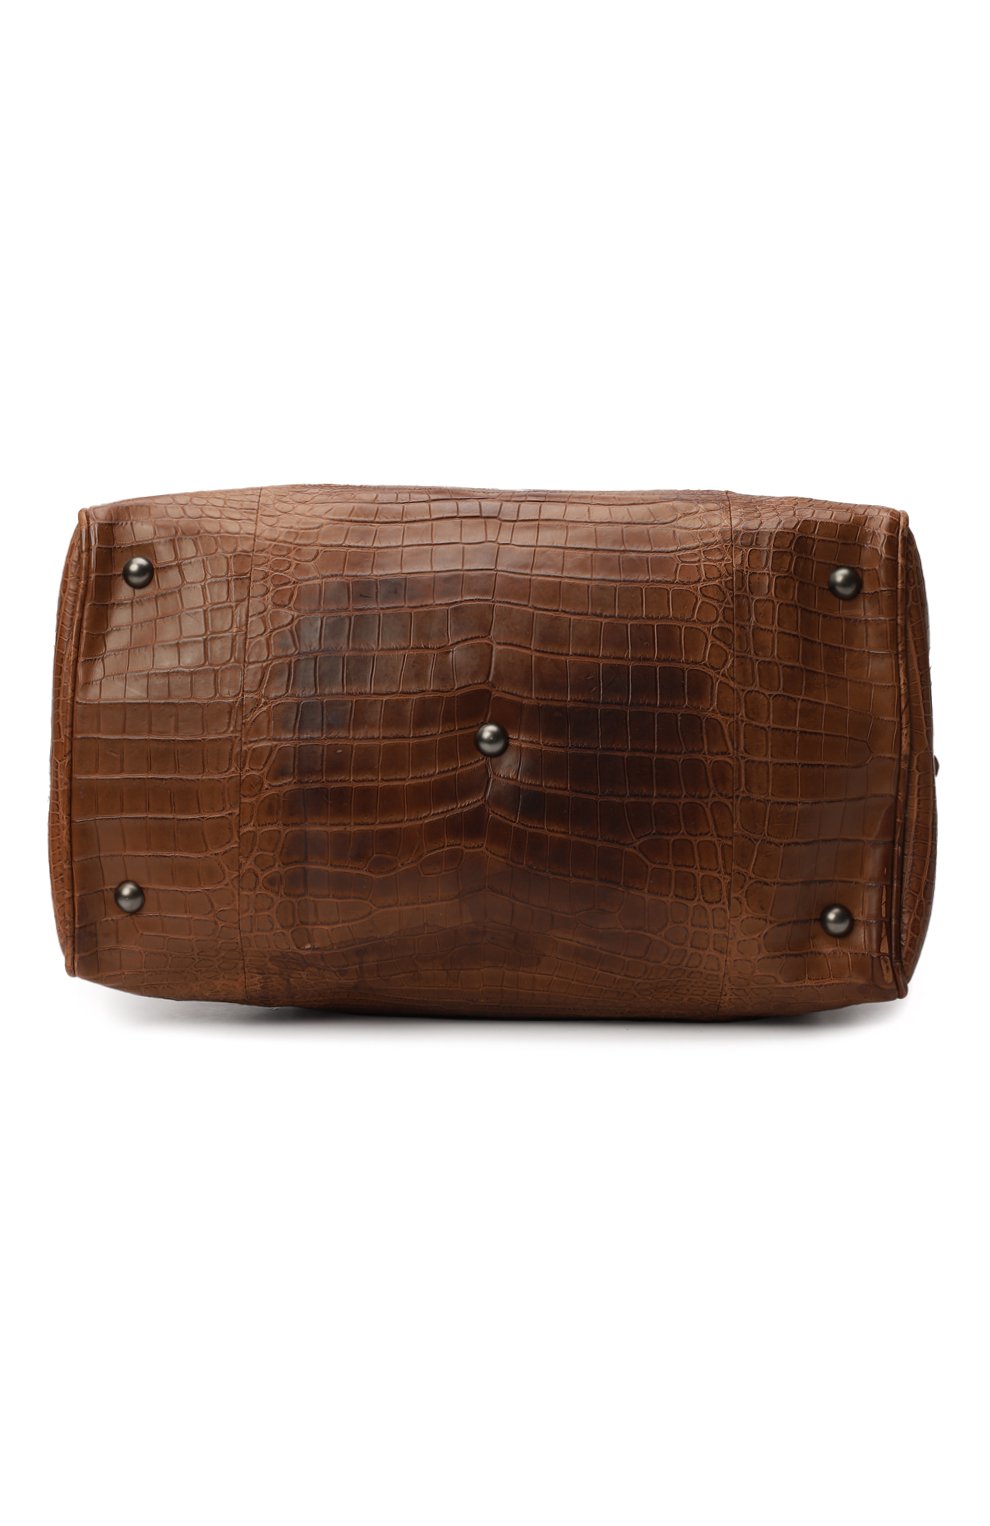 Дорожная сумка из кожи крокодила | Bottega Veneta | Коричневый - 5